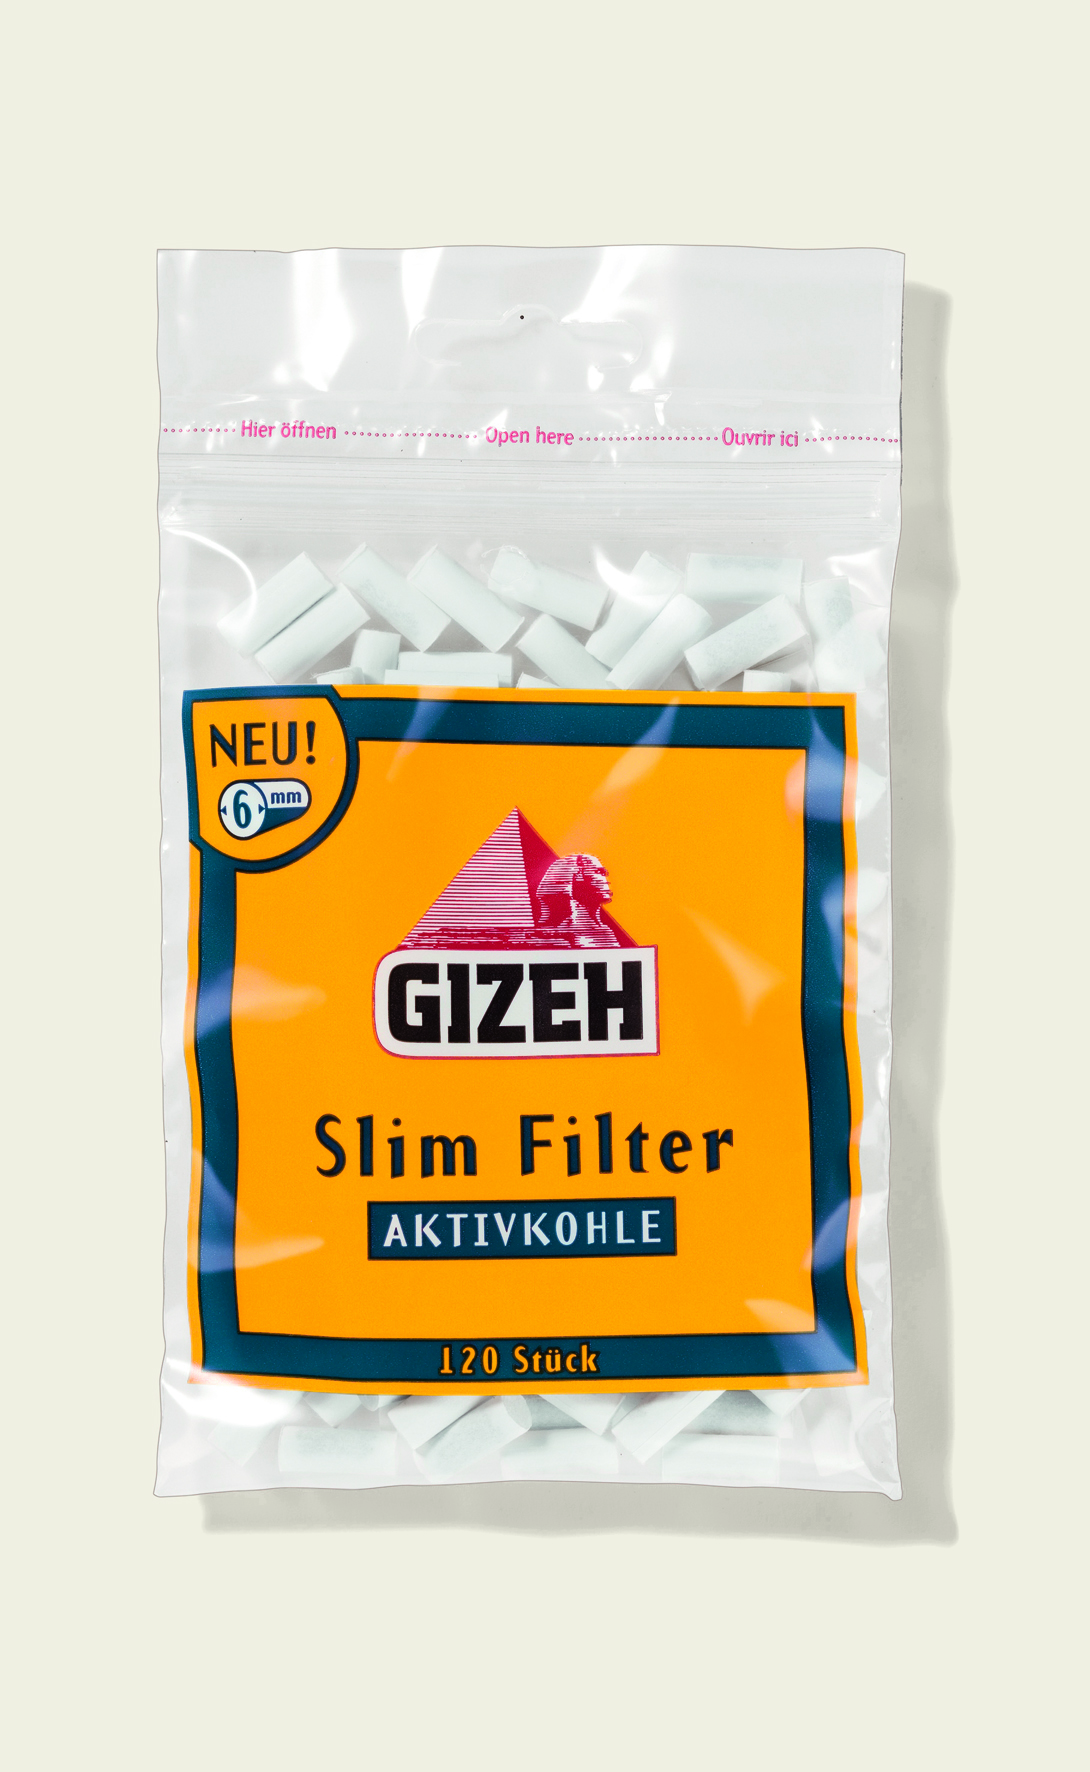 GIZEH Slim Filter Aktivkohle 6mm 120er